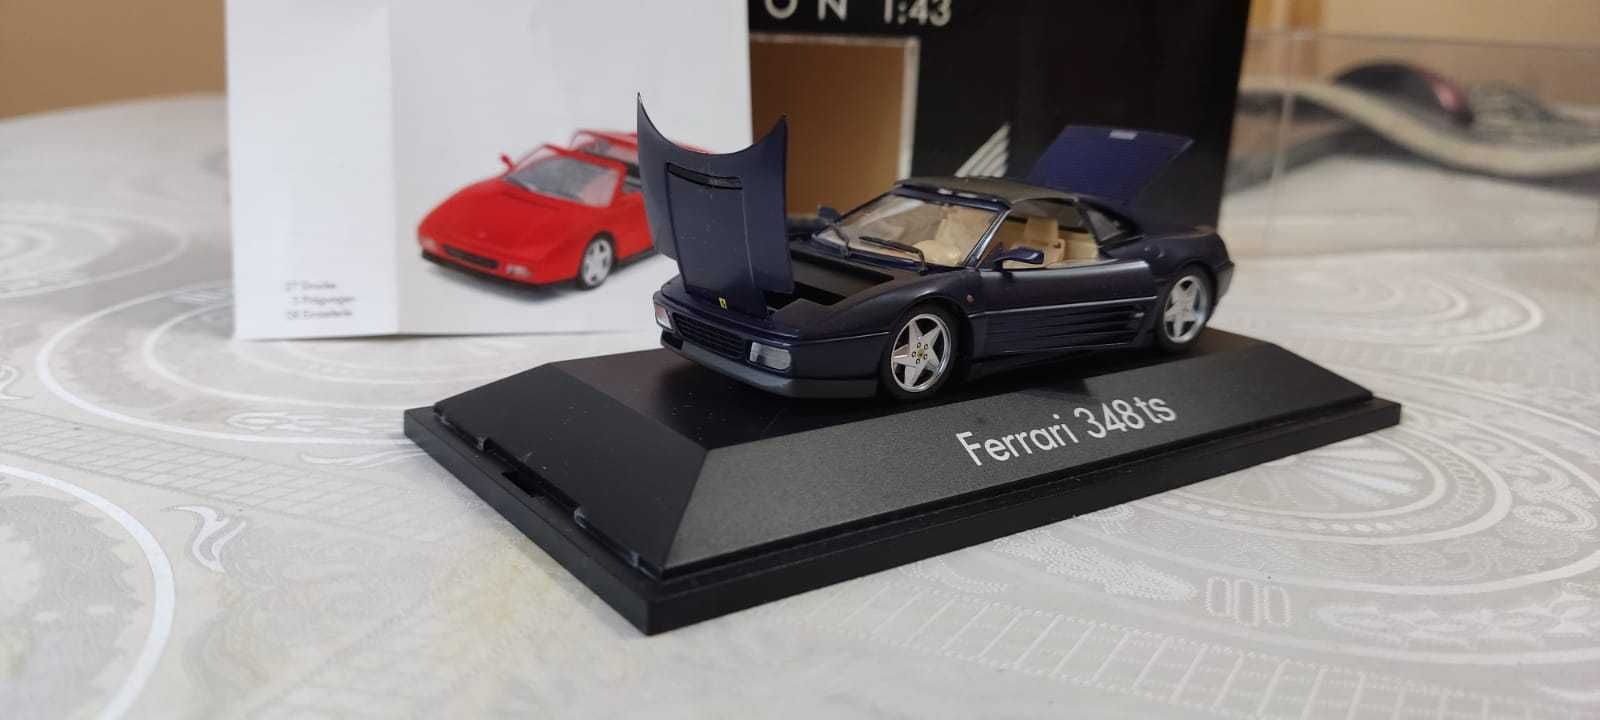 Продам модель Ferrari 348 targa (herpa) 1/43